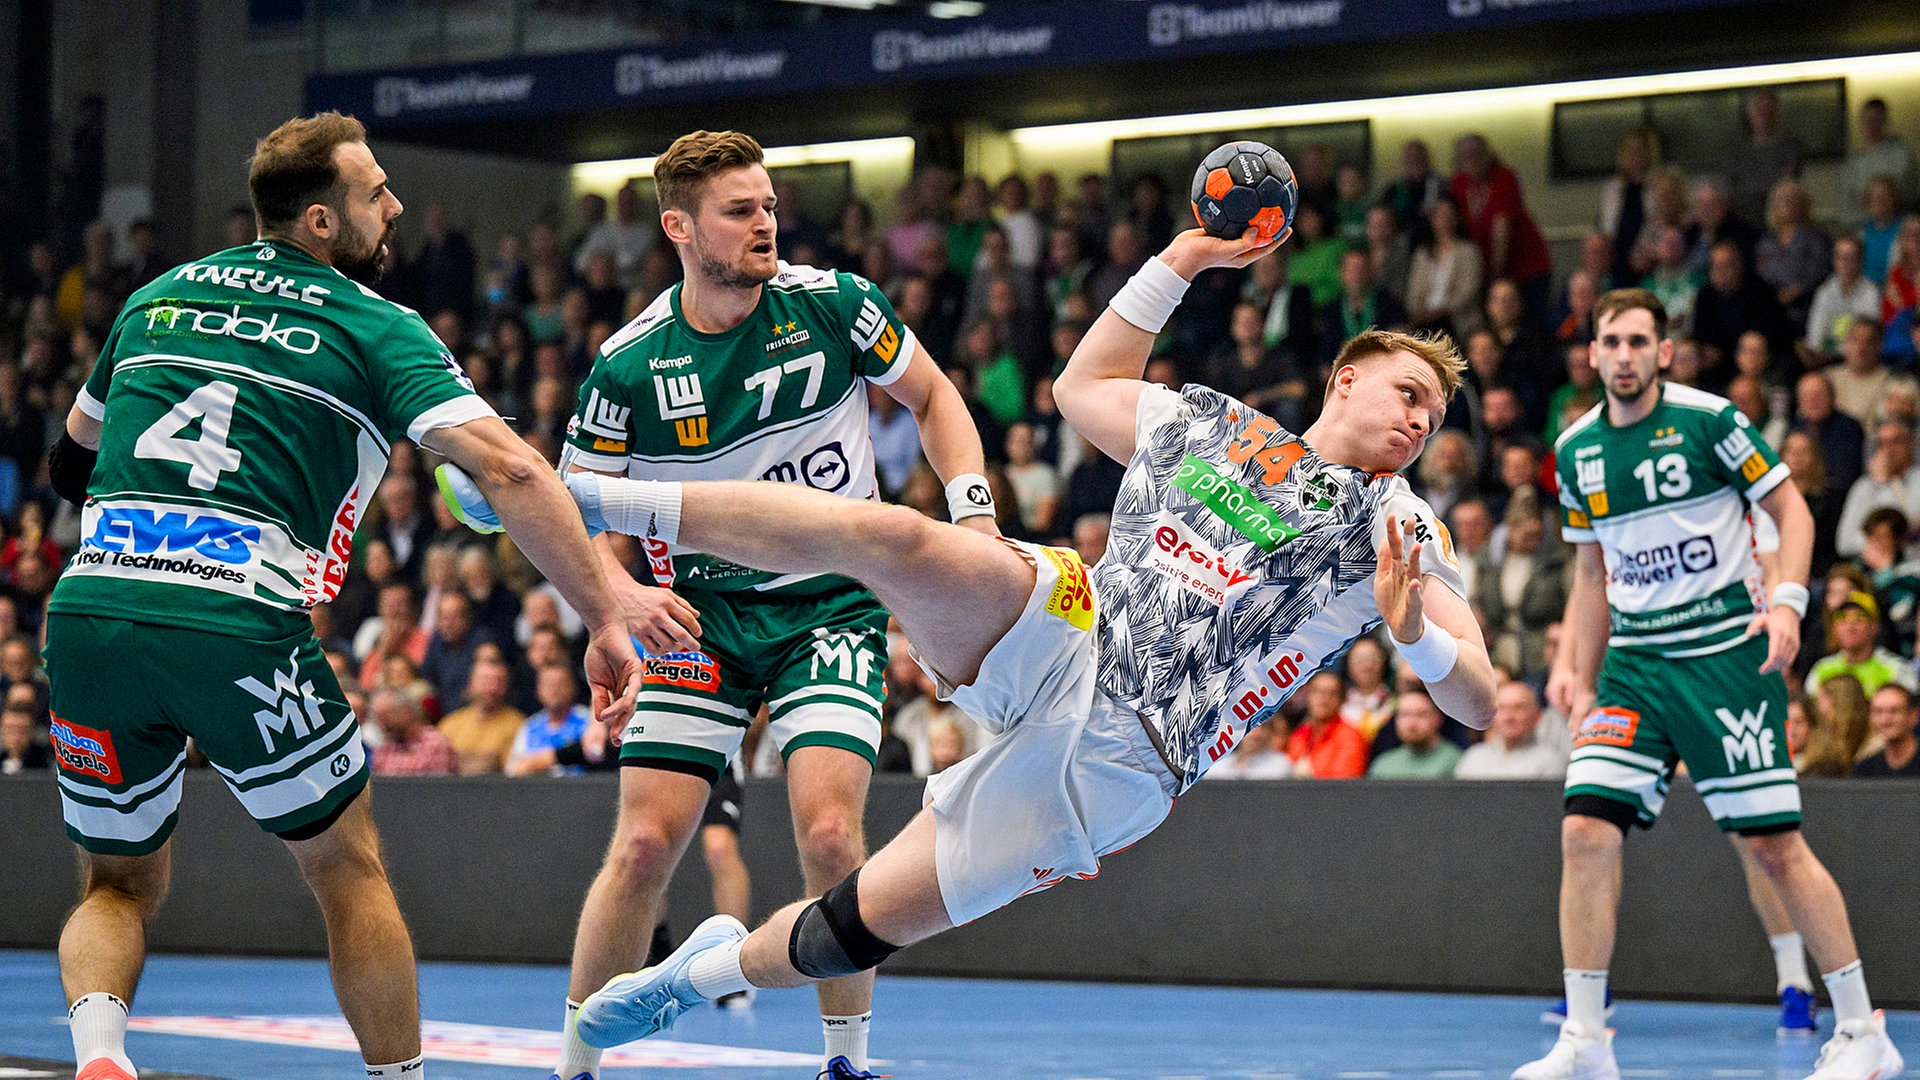 hsv hannover handball live ticker